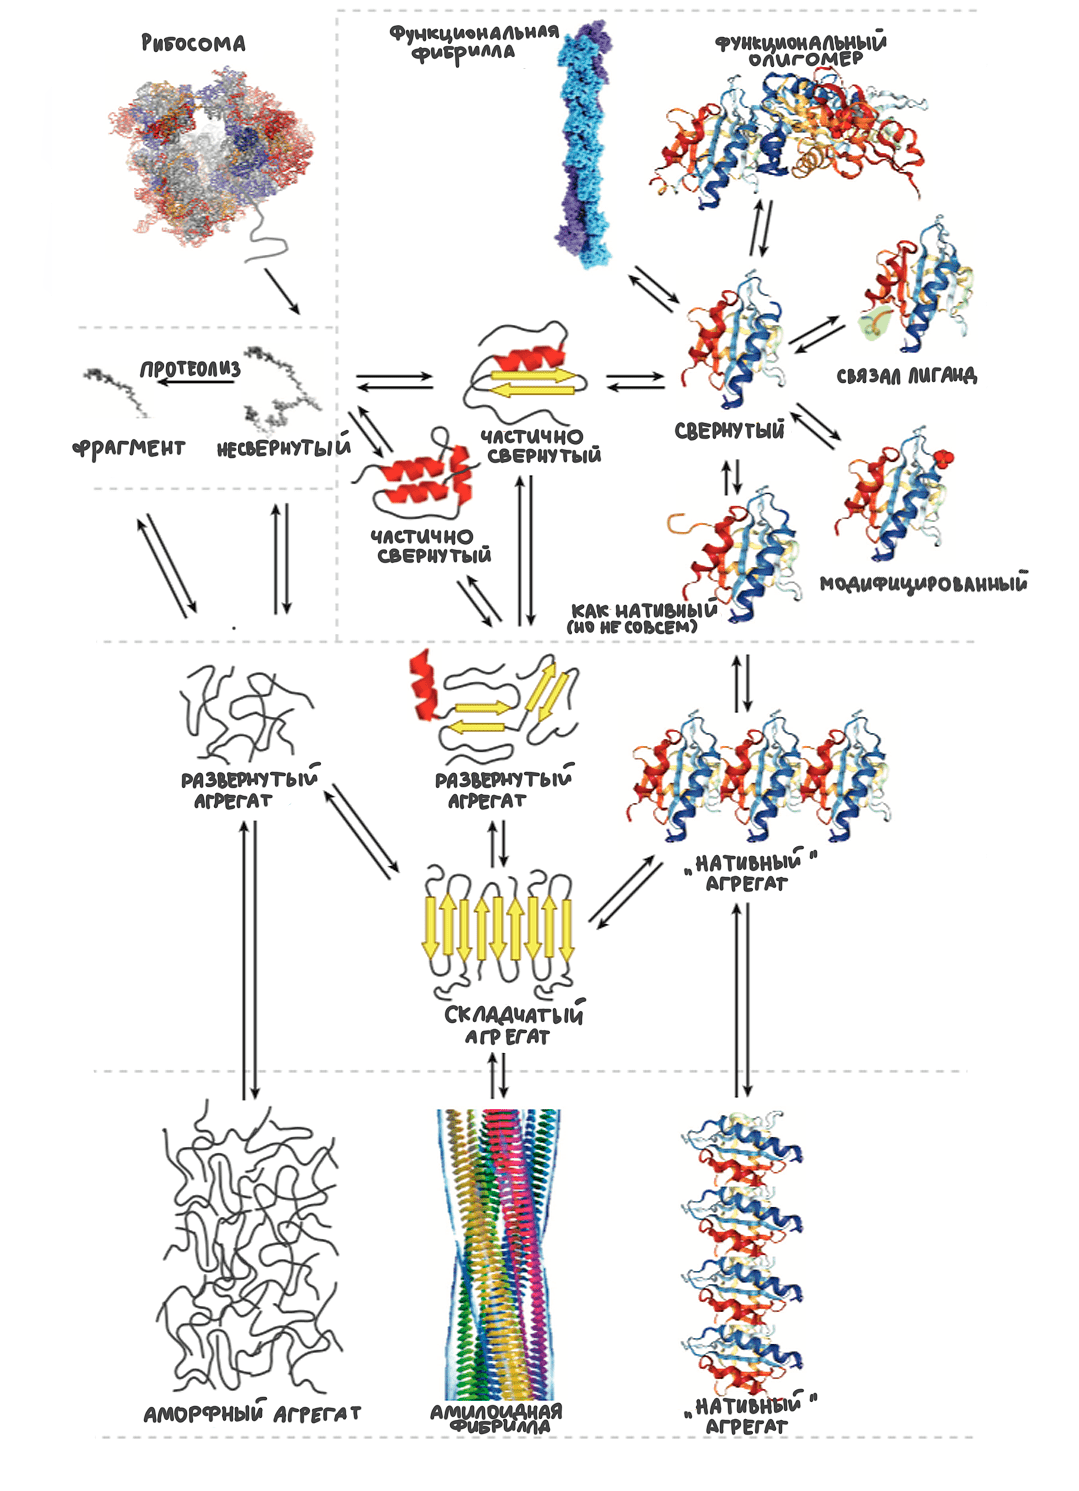 Многообразие функциональных форм белков и их агрегатов